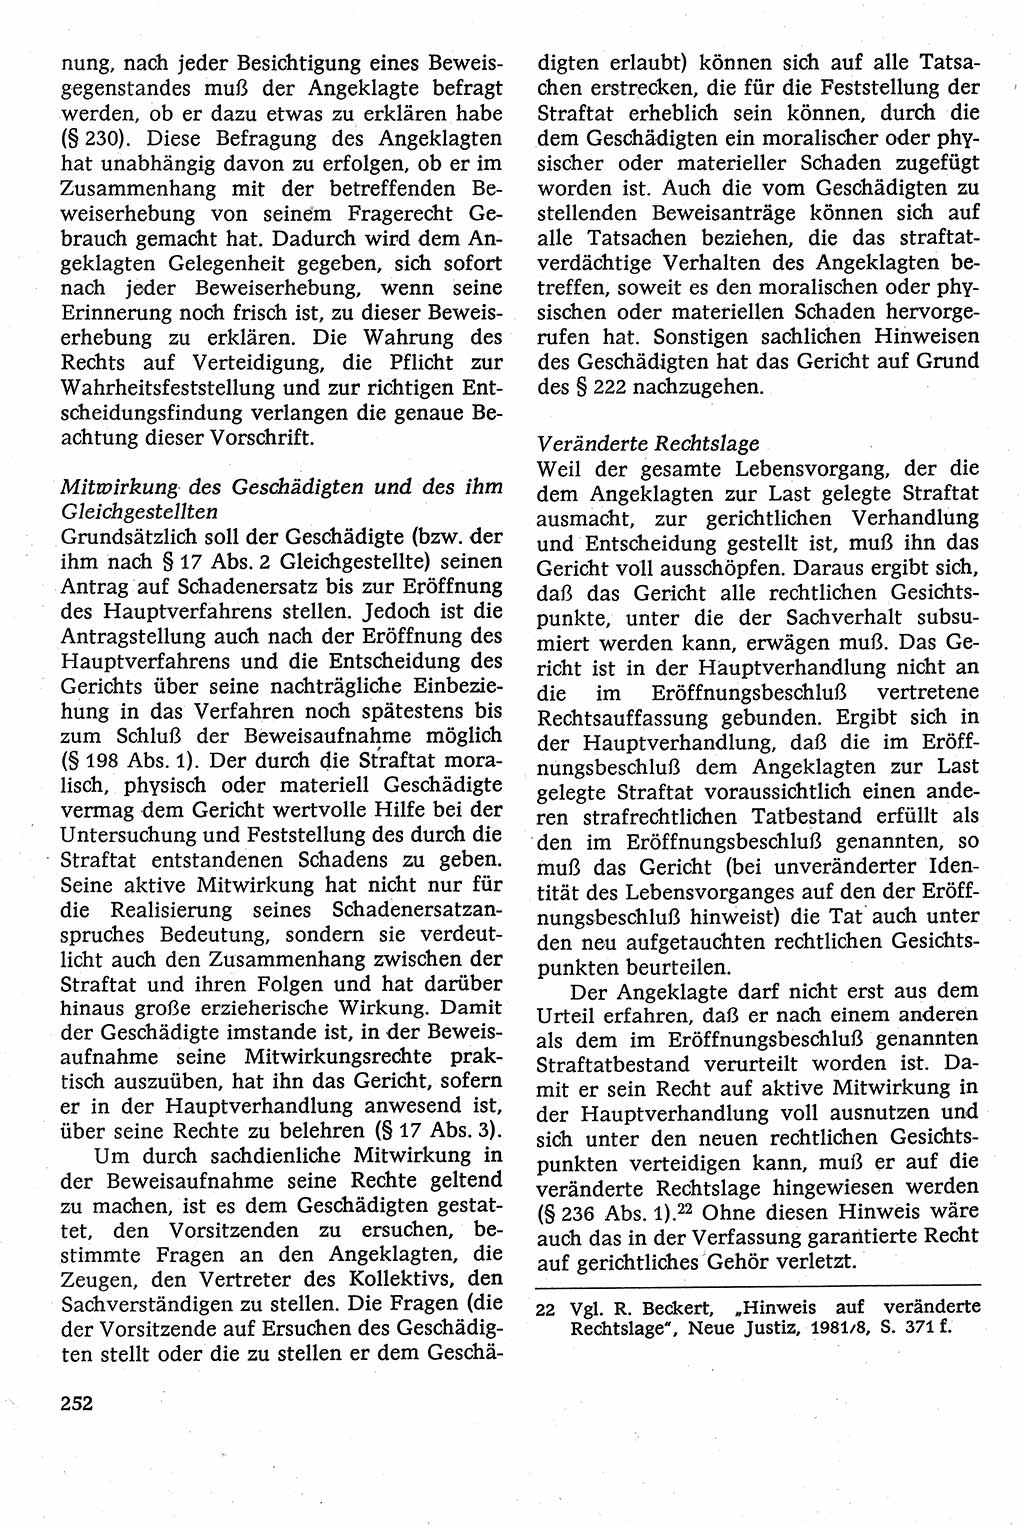 Strafverfahrensrecht [Deutsche Demokratische Republik (DDR)], Lehrbuch 1982, Seite 252 (Strafverf.-R. DDR Lb. 1982, S. 252)